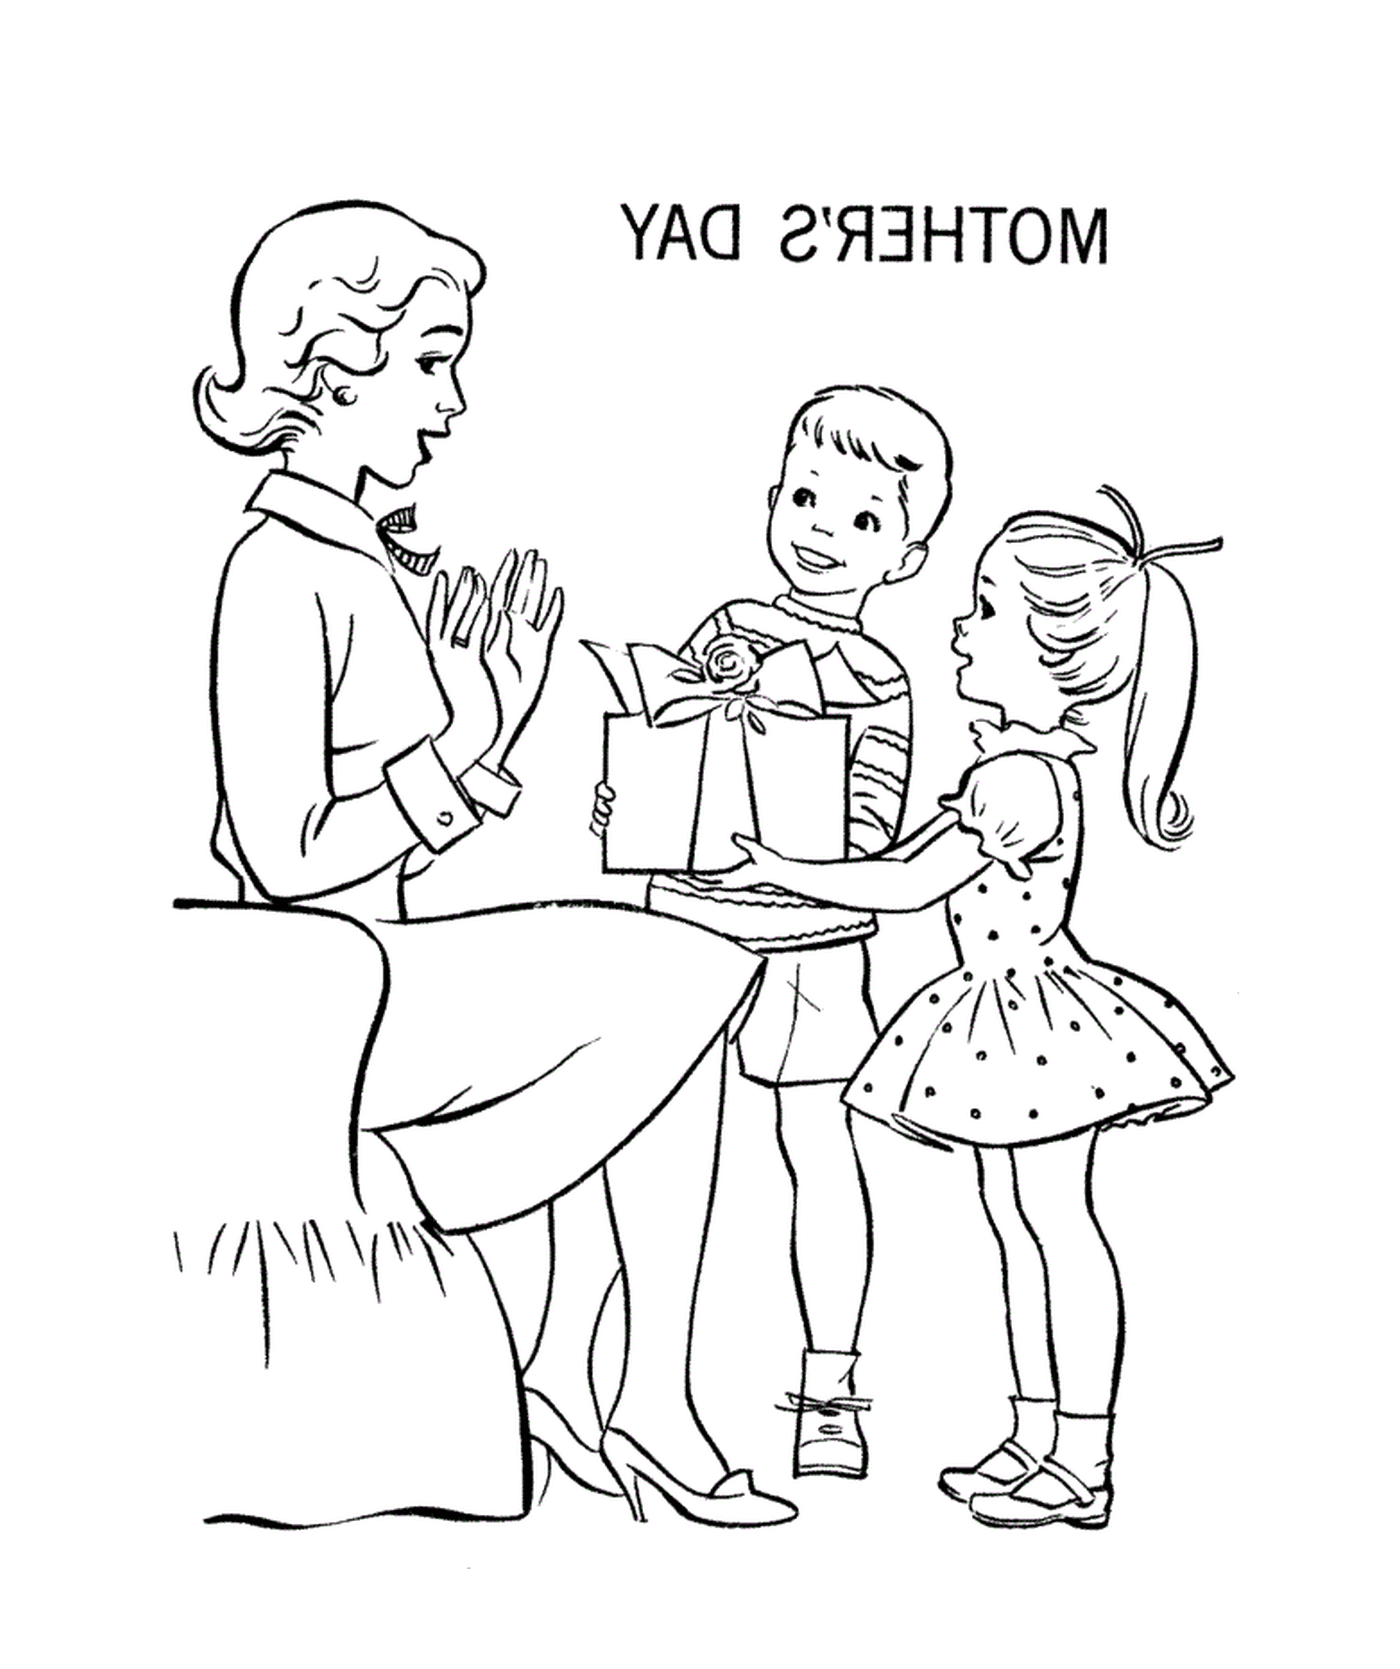   Une femme adulte offrant un cadeau à un enfant 